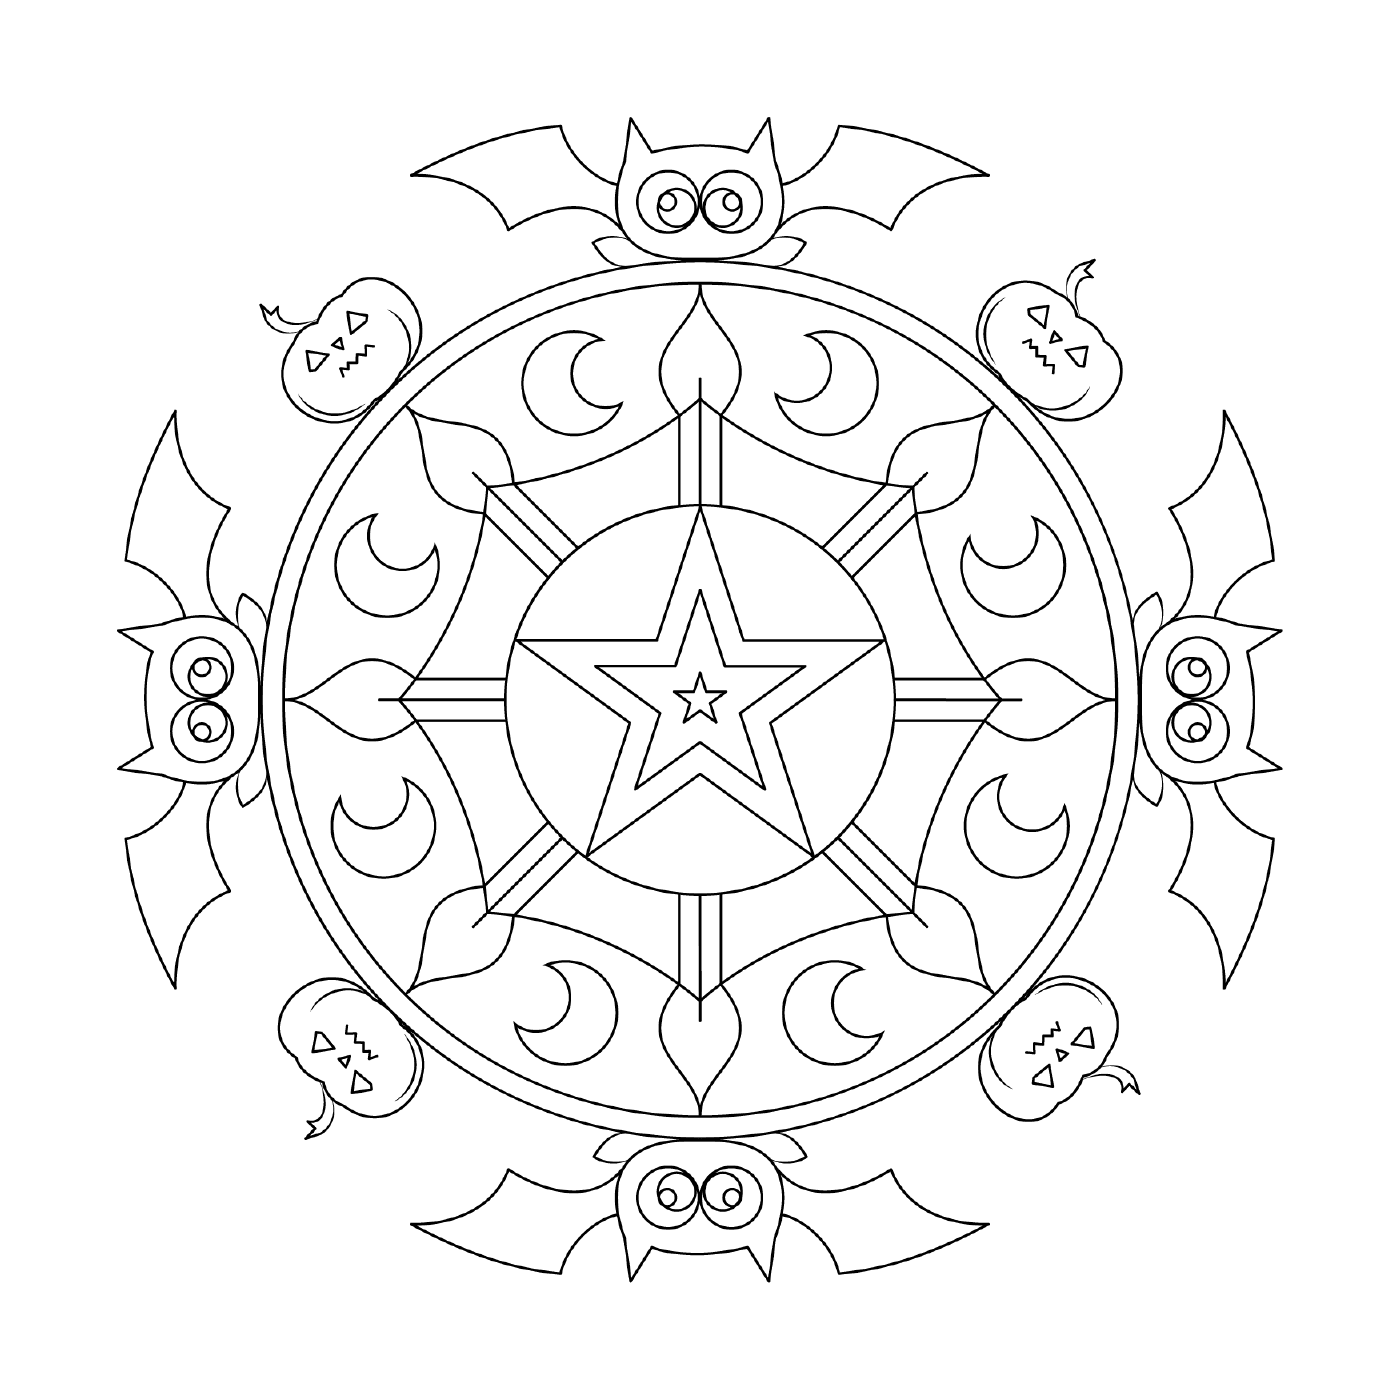   Mandala avec chauves-souris et étoile 